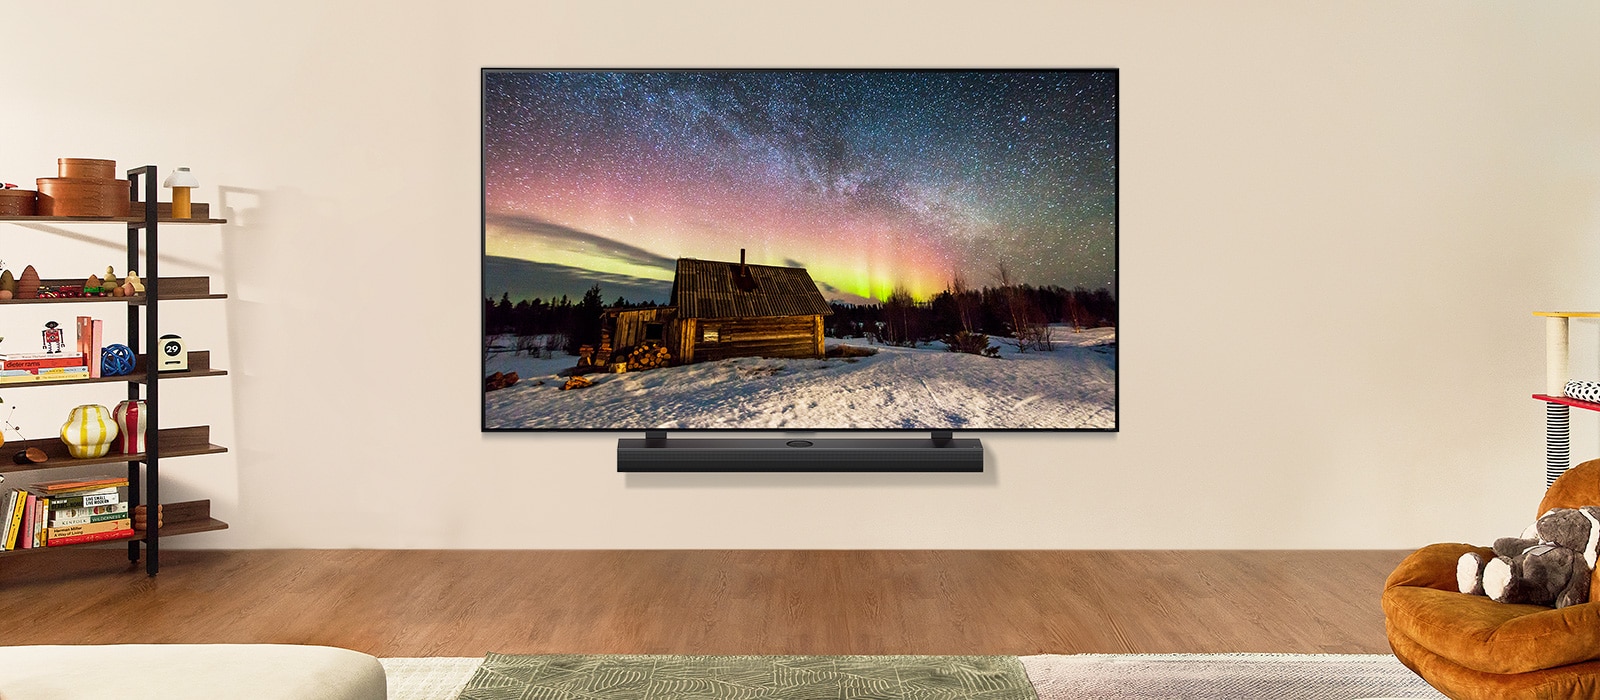 LG TV QNED  y LG Soundbar en un espacio moderno durante el día. La imagen en pantalla de la aurora boreal se muestra con los niveles de brillo ideales.